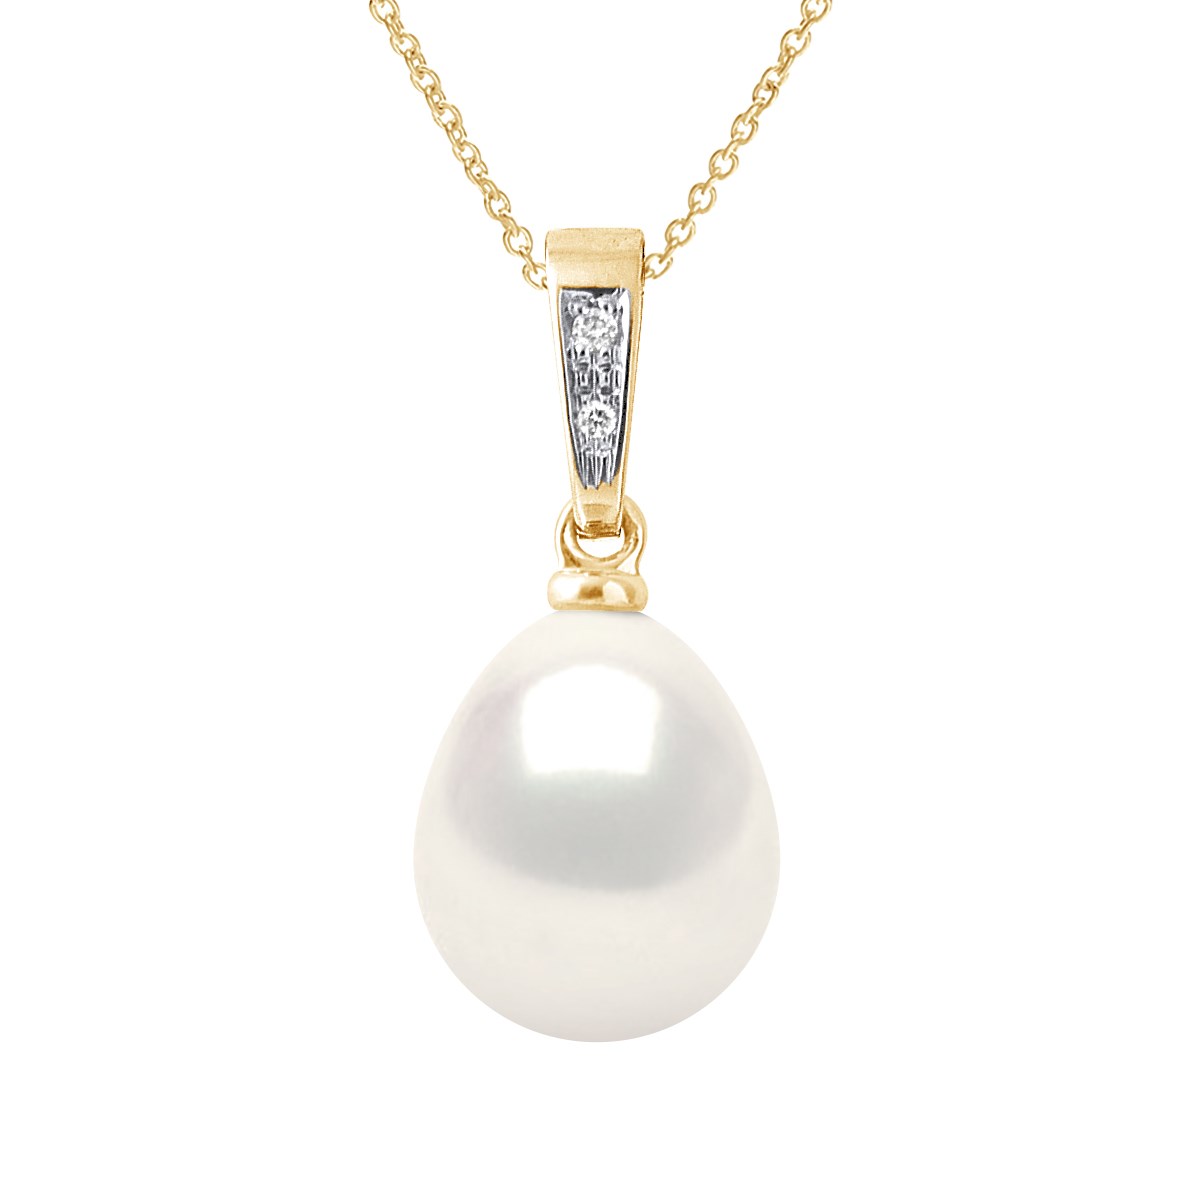 Pendentif Joaillerie Diamants 0,01 Cts - Véritable Perle de Culture d'Eau Douce Poire 9-10 mm - Blanc Naturel - Or Jaune